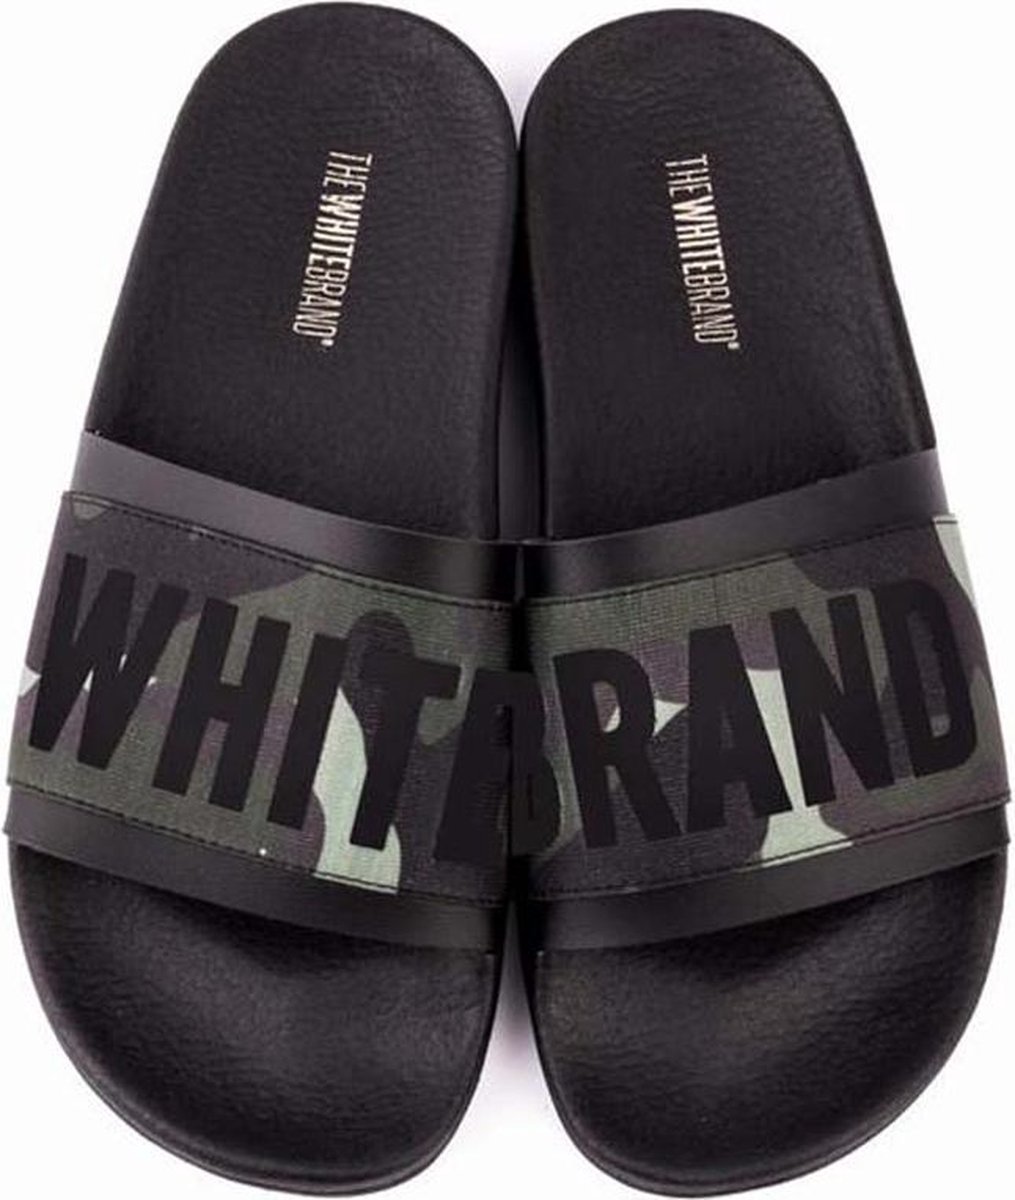 Syd latin Bogholder The White Brand slippers | bol.com